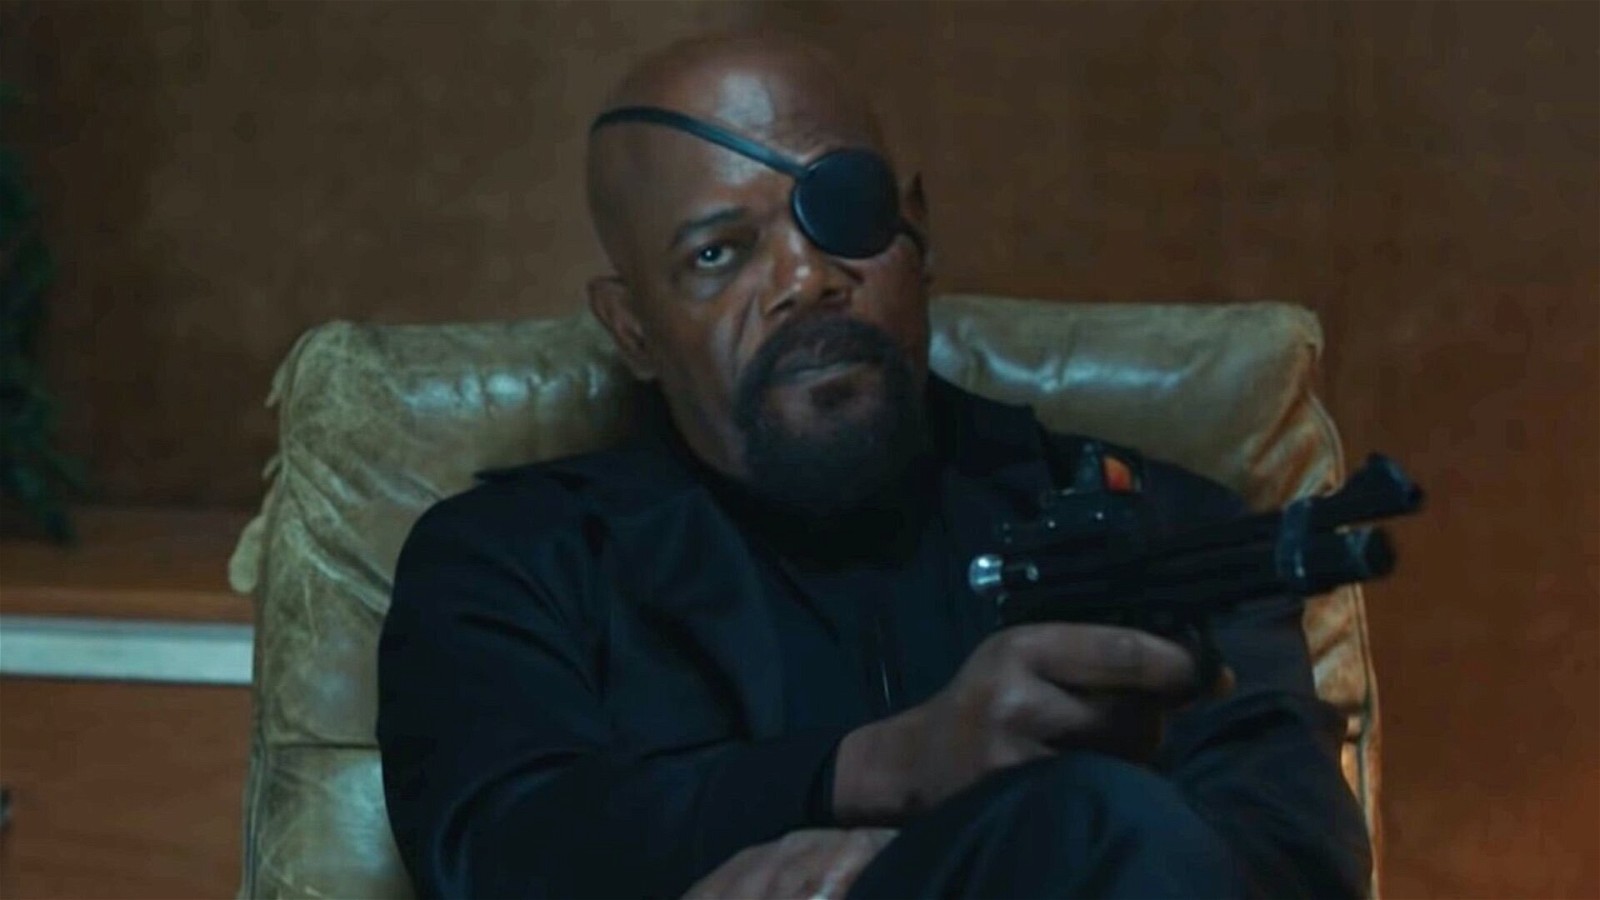 Samuel L Jackson as Nick Fury